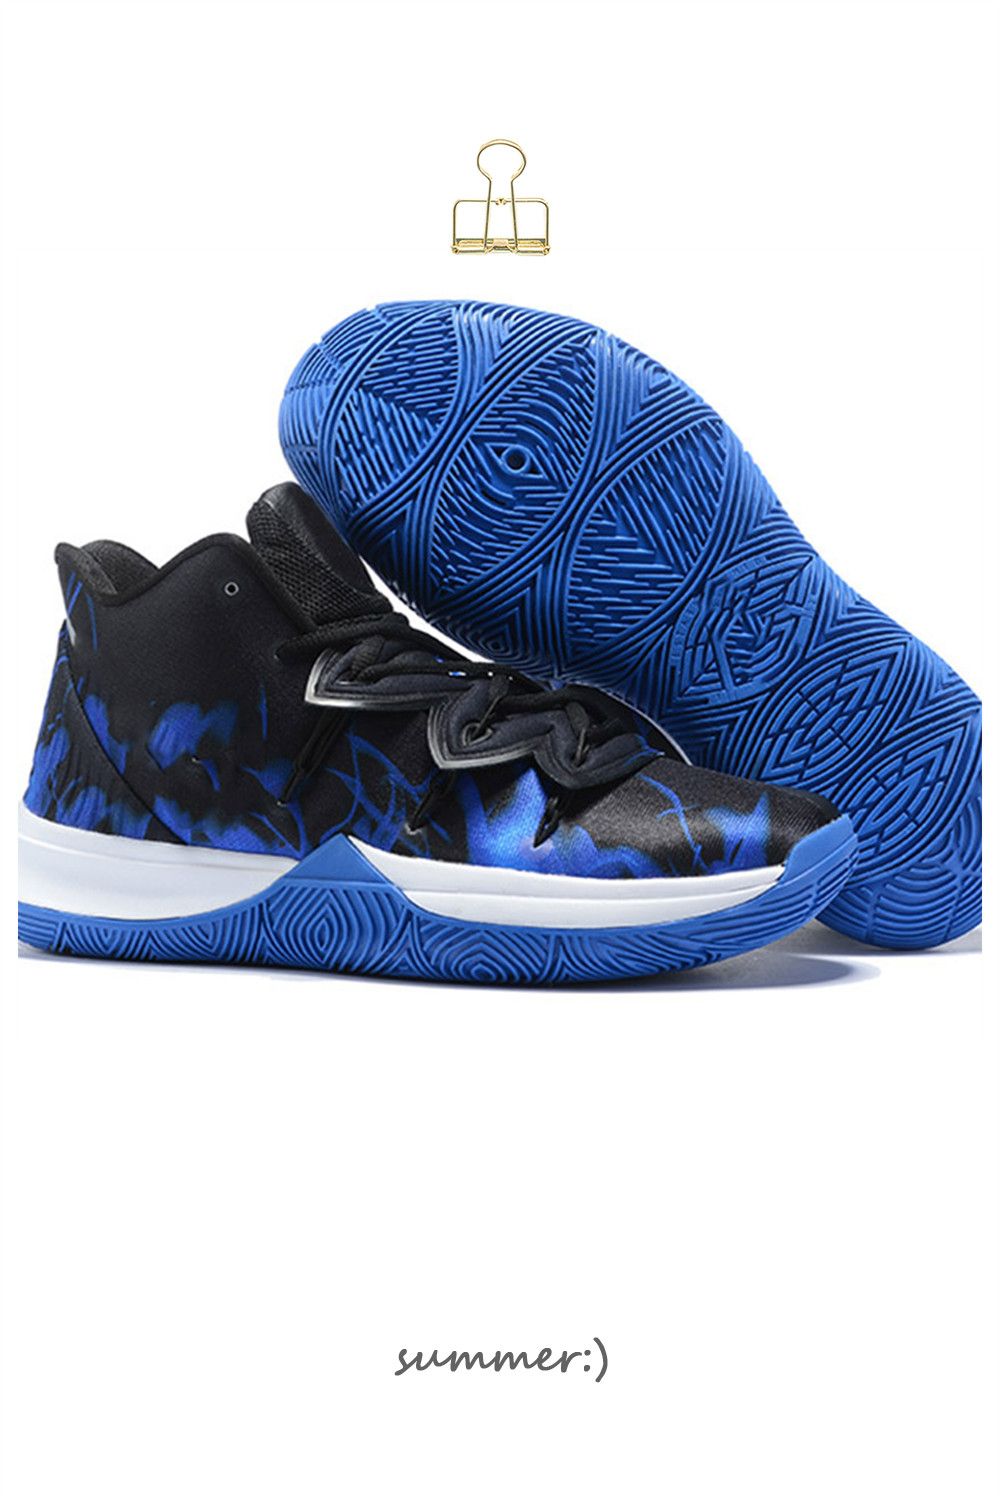 Nike Kyrie 5 'Duke' Kyrie irving shoes Irving Pinterest